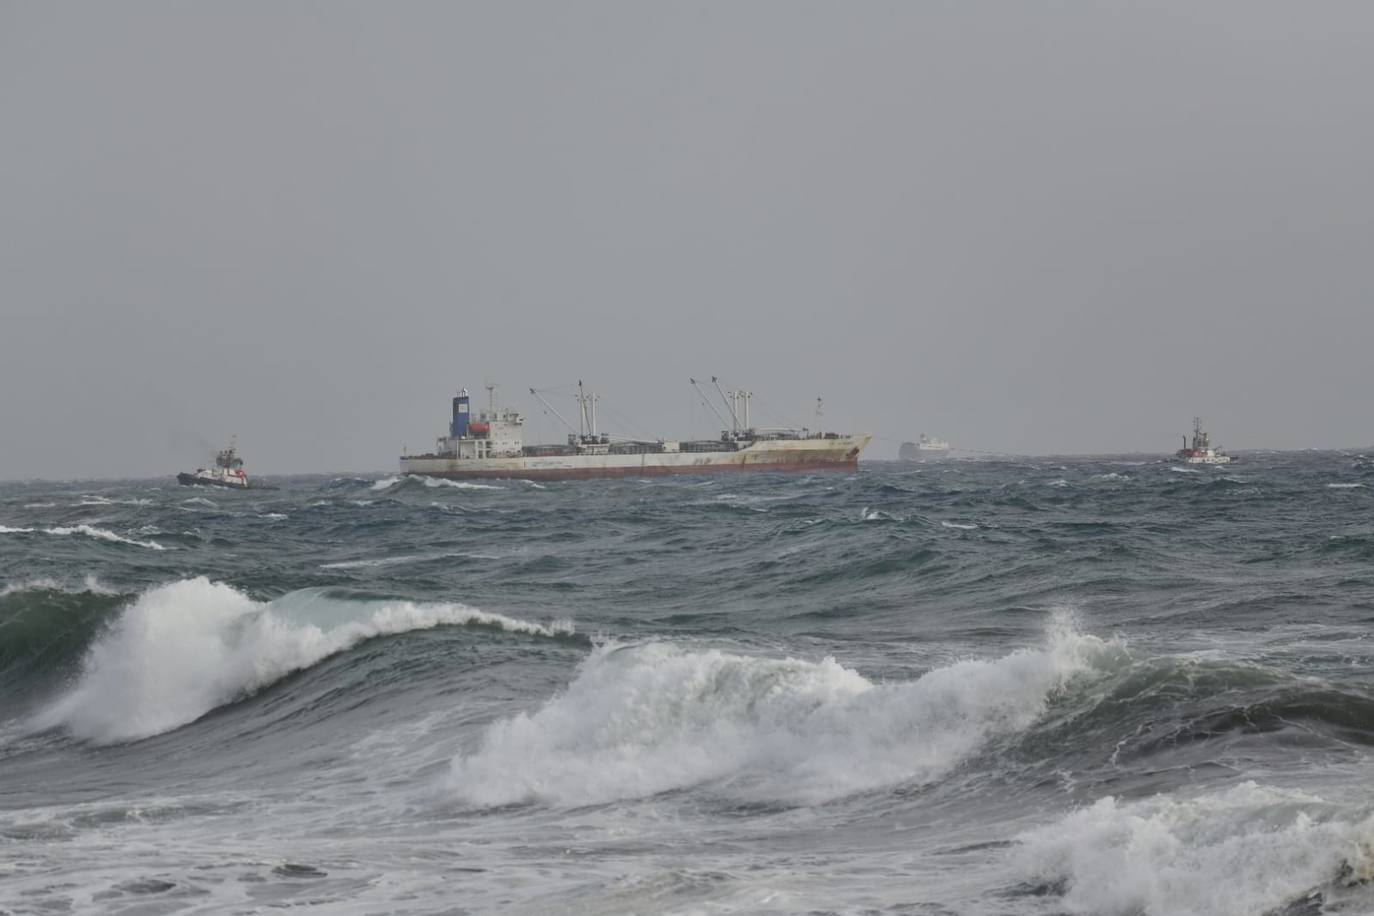 Imagen secundaria 1 - Salvamento rescata varias embarcaciones en Gran Canaria